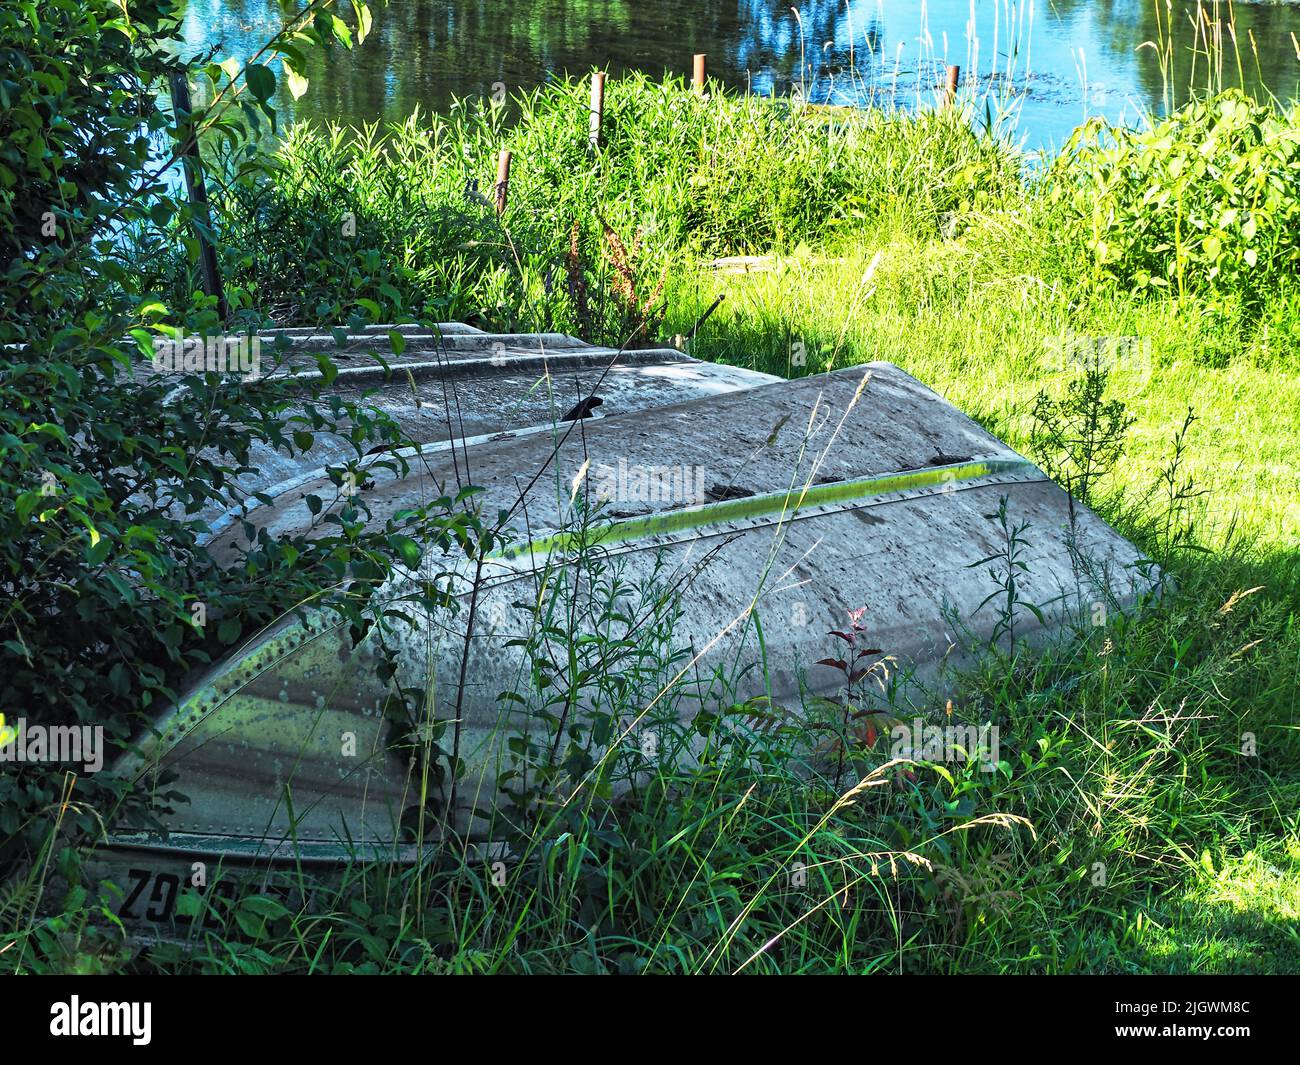 Tres botes a remo almacenados en una orilla del lago Foto de stock